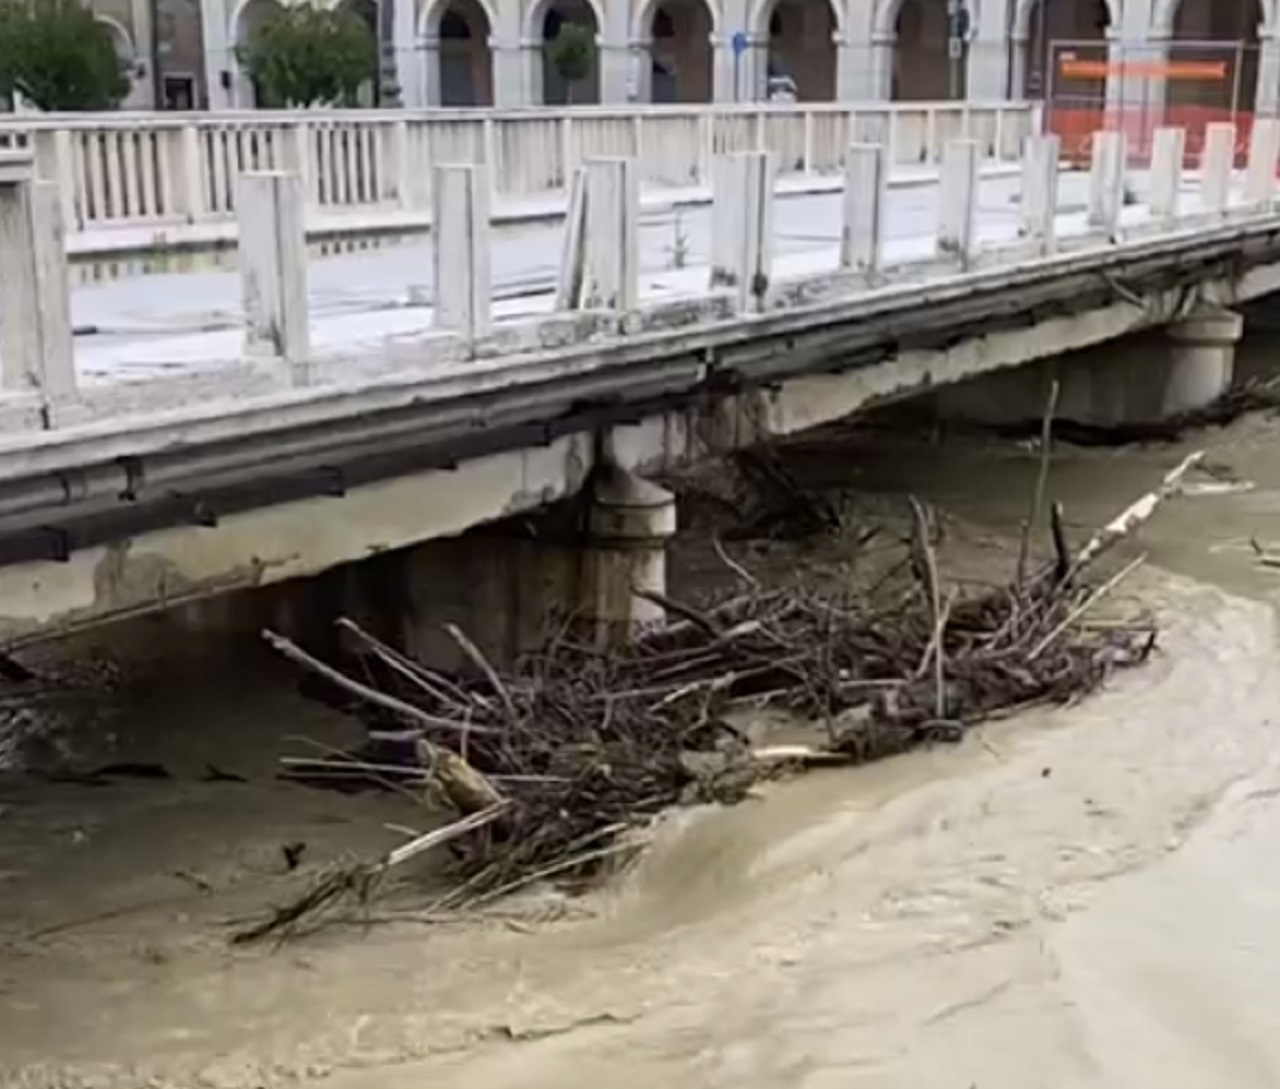 Maltempo: i detriti fermi sulle pile di ponte Garibaldi per la piena del fiume Misa